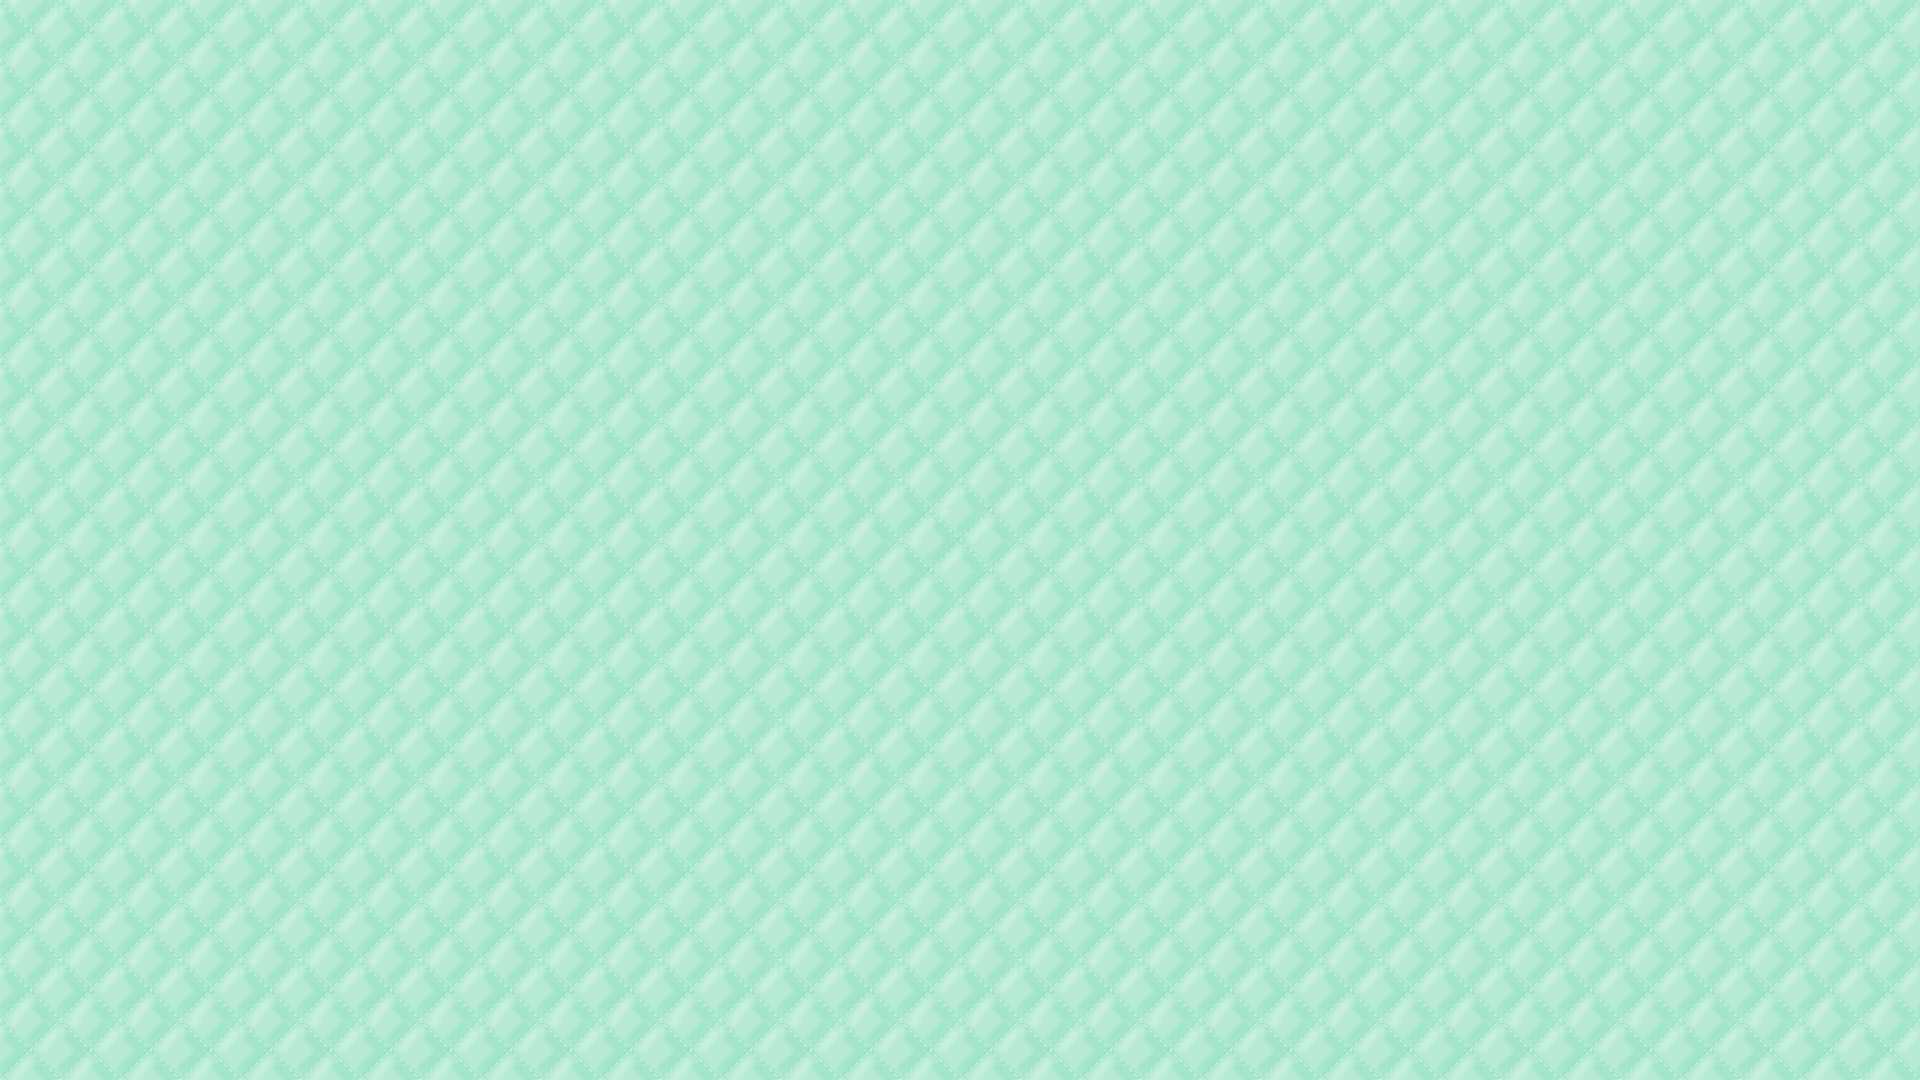 Pastel Mint Green Wallpapers - Top Những Hình Ảnh Đẹp